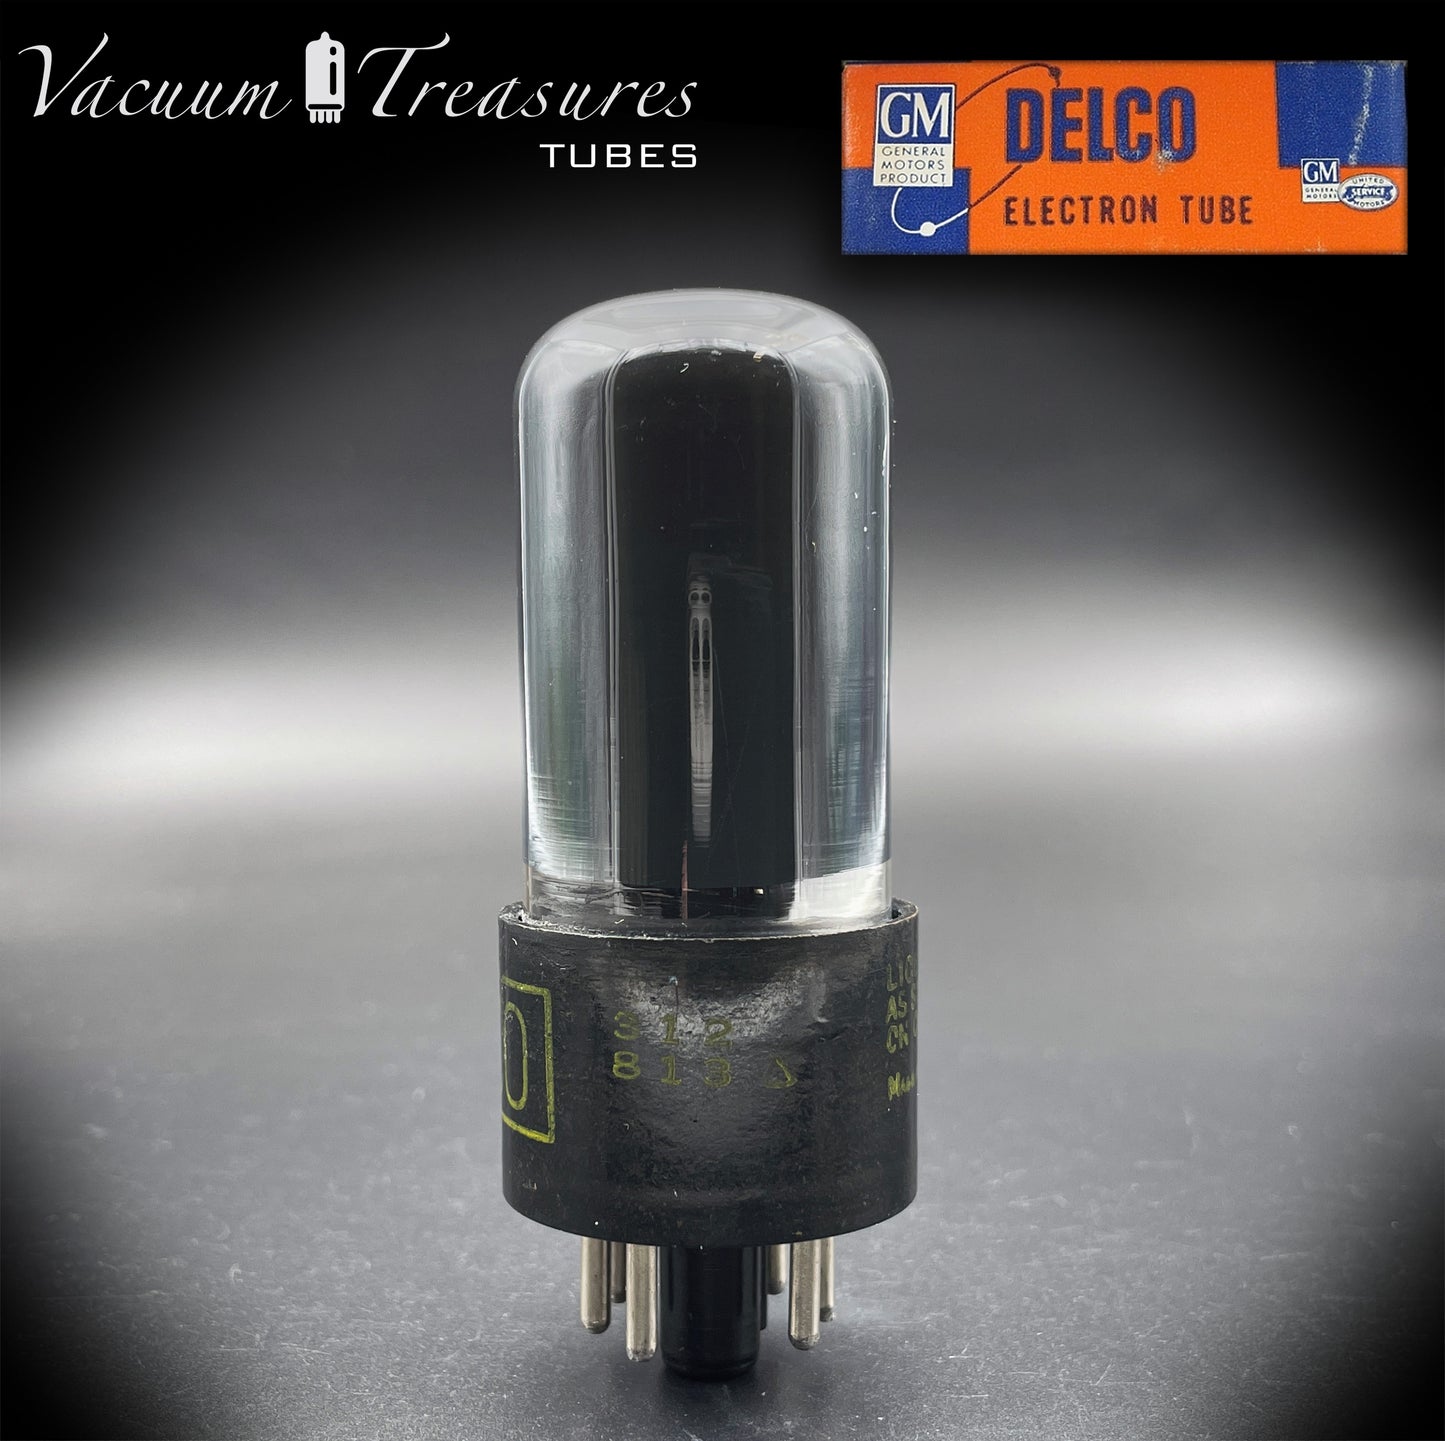 Getter de feuille de verre noir 6V6 GT DELCO par SYLVANIA Tube testé fabriqué aux États-Unis '48